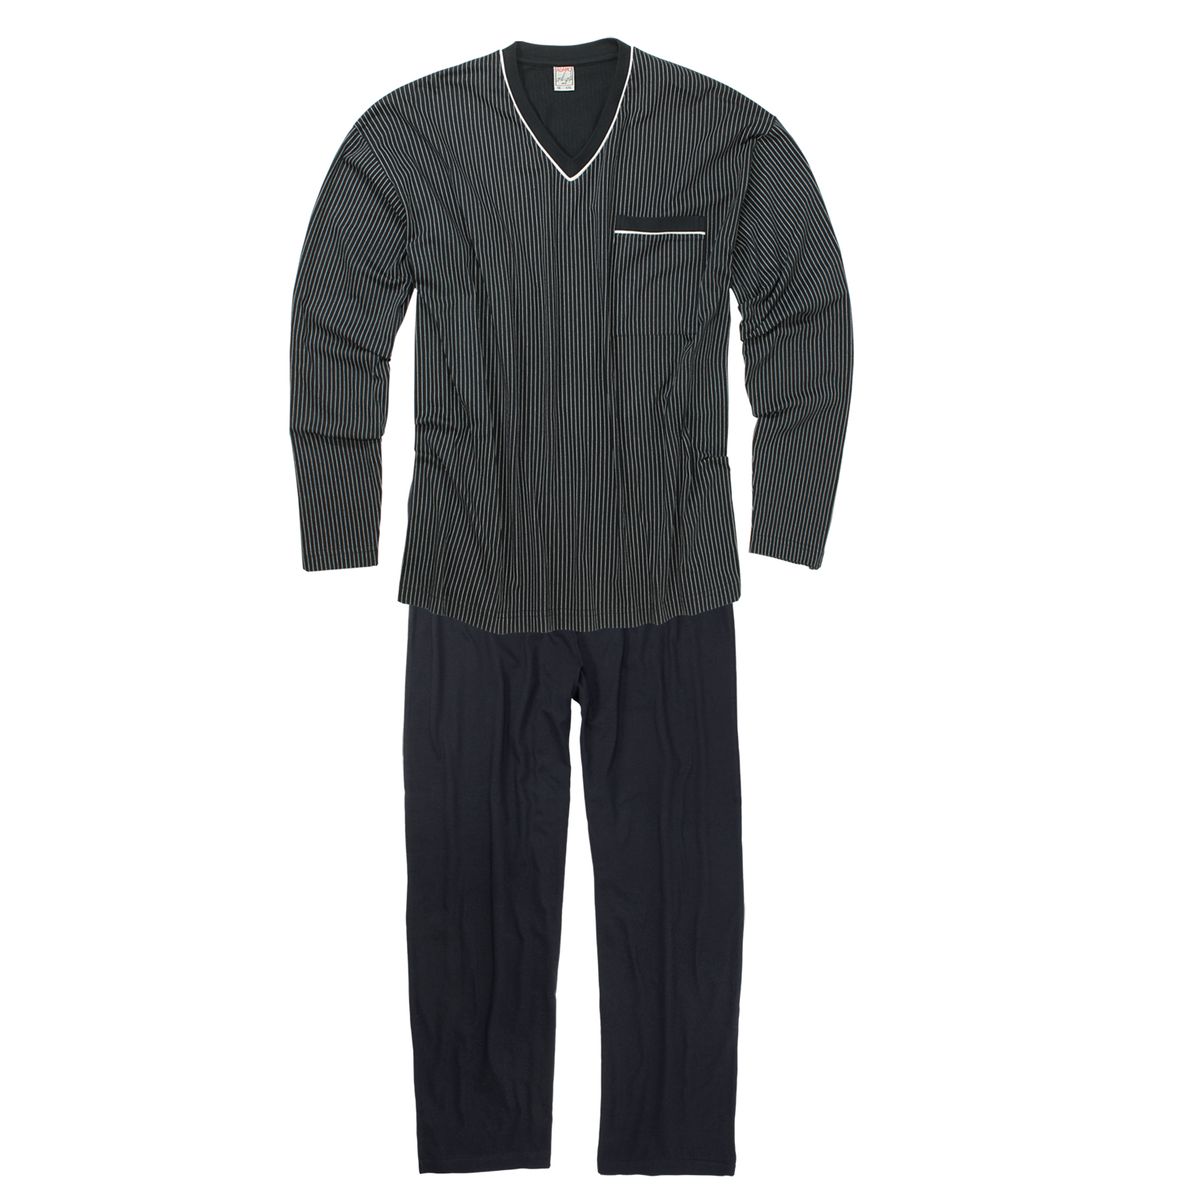 Adamo Pyjama dunkelblau-weiß gestreift große Größen